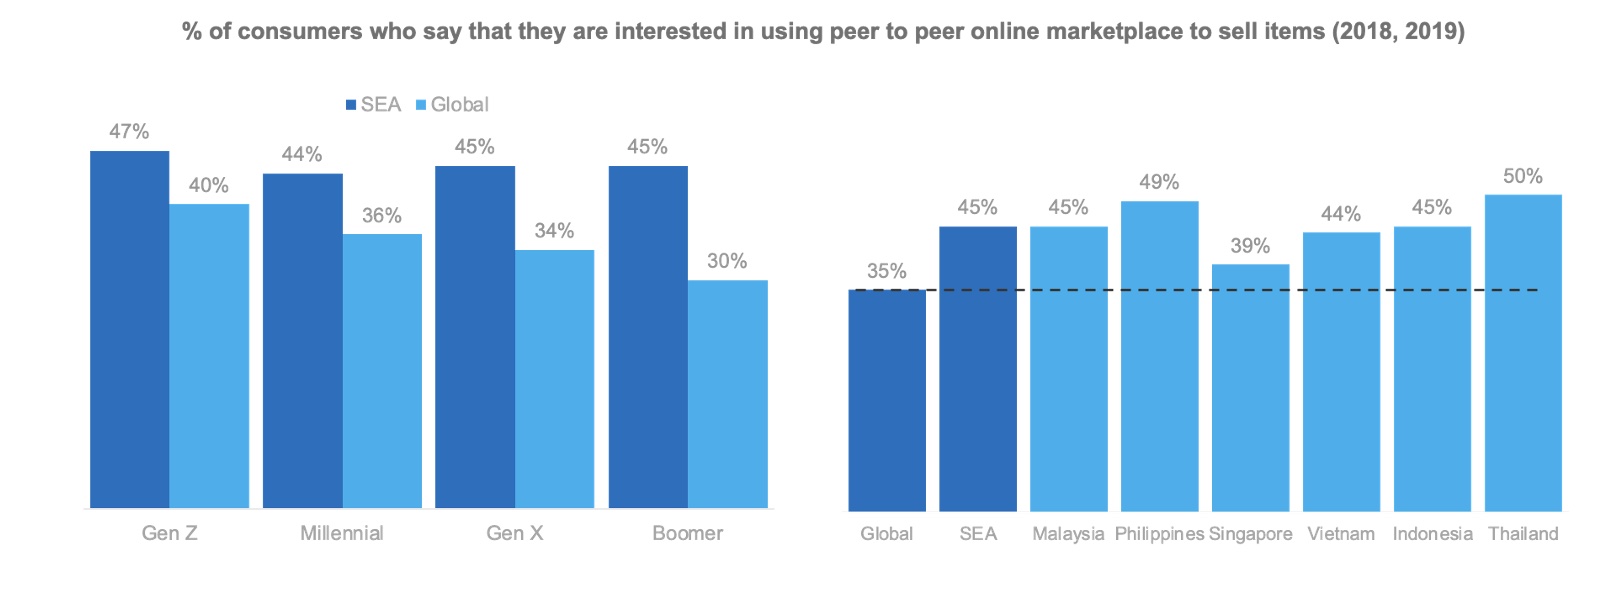 Les habitants d'Asie du Sud-Est montrent une préférence plus élevée pour les marchés en ligne P2P que les autres régions